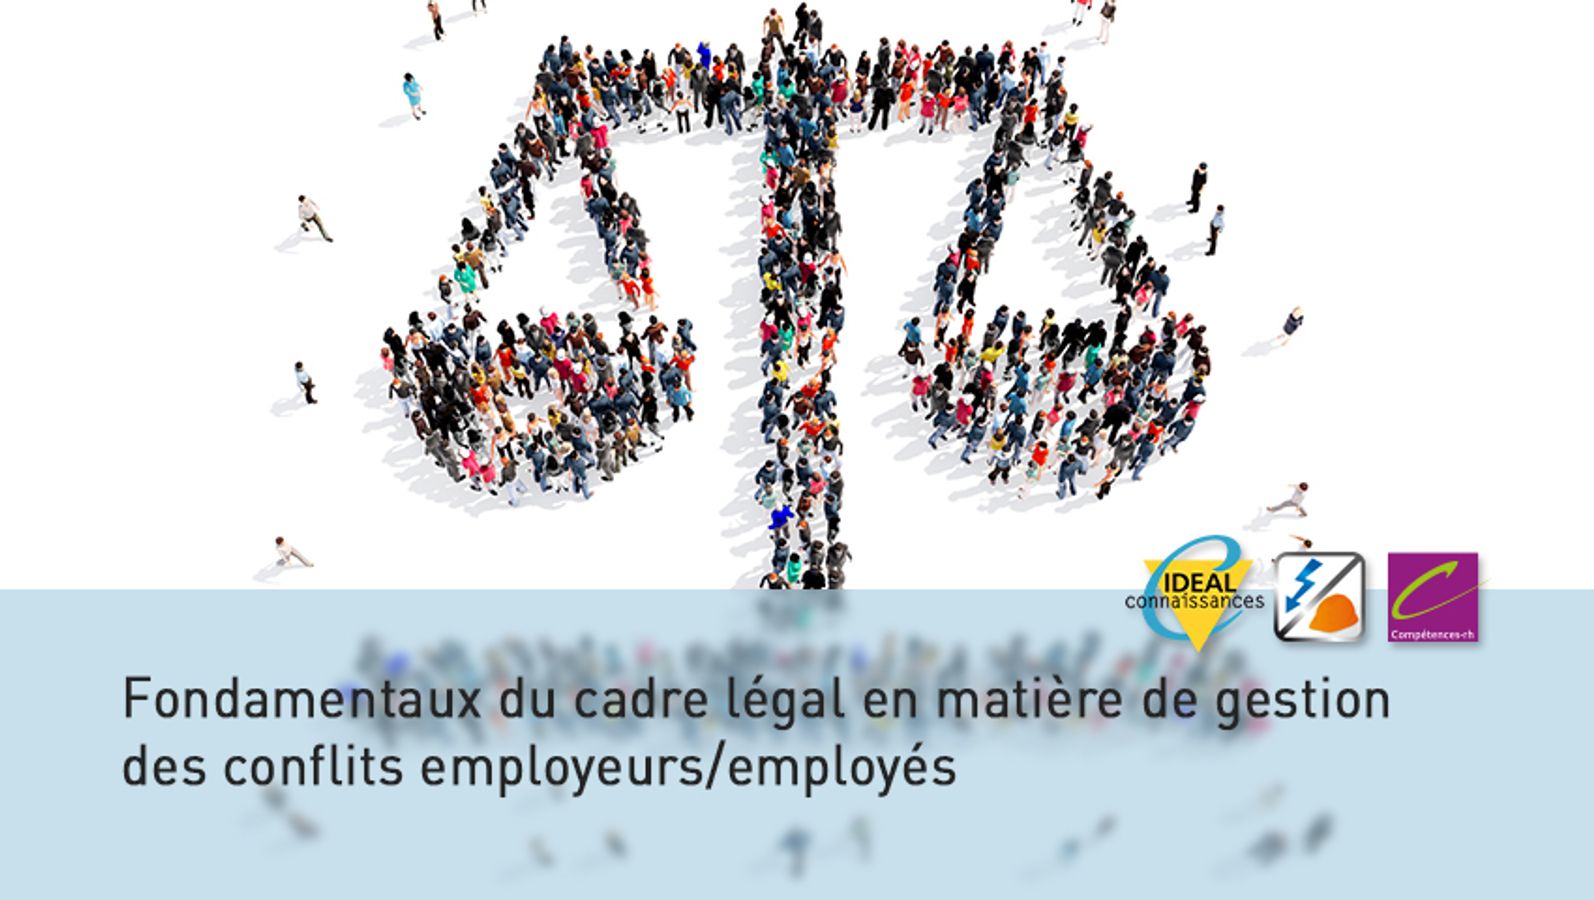 Fondamentaux du cadre légal en matière de gestion des conflits employeurs/employés - Les recours possibles et tour d'horizon 